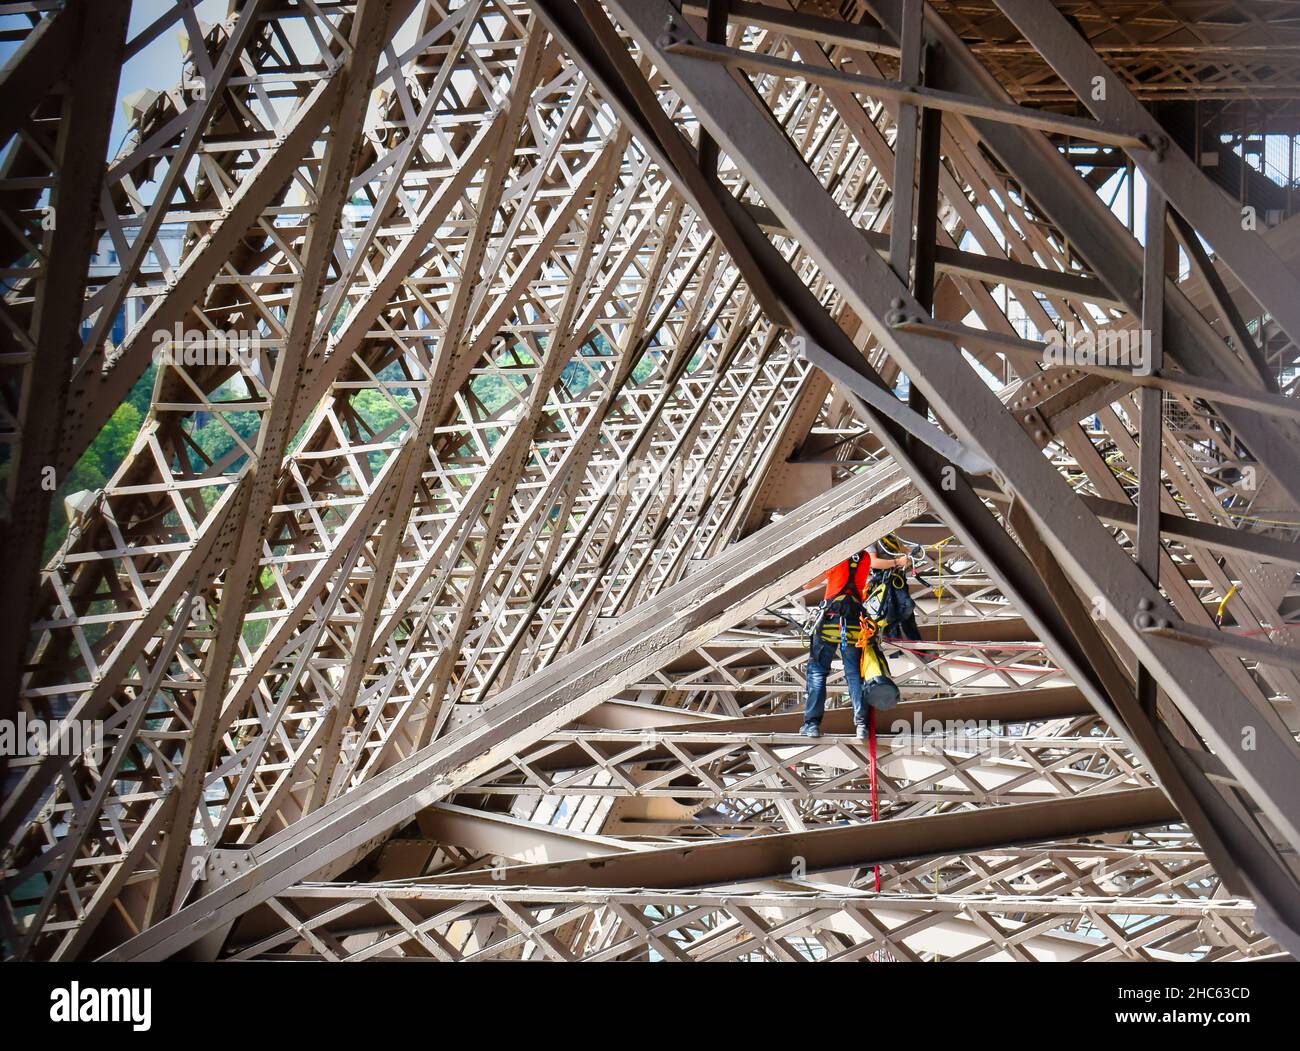 Trabajos de mantenimiento por dos operarios en la estruca metálica de la torre Eiffel en Paris, Francia Stockfoto